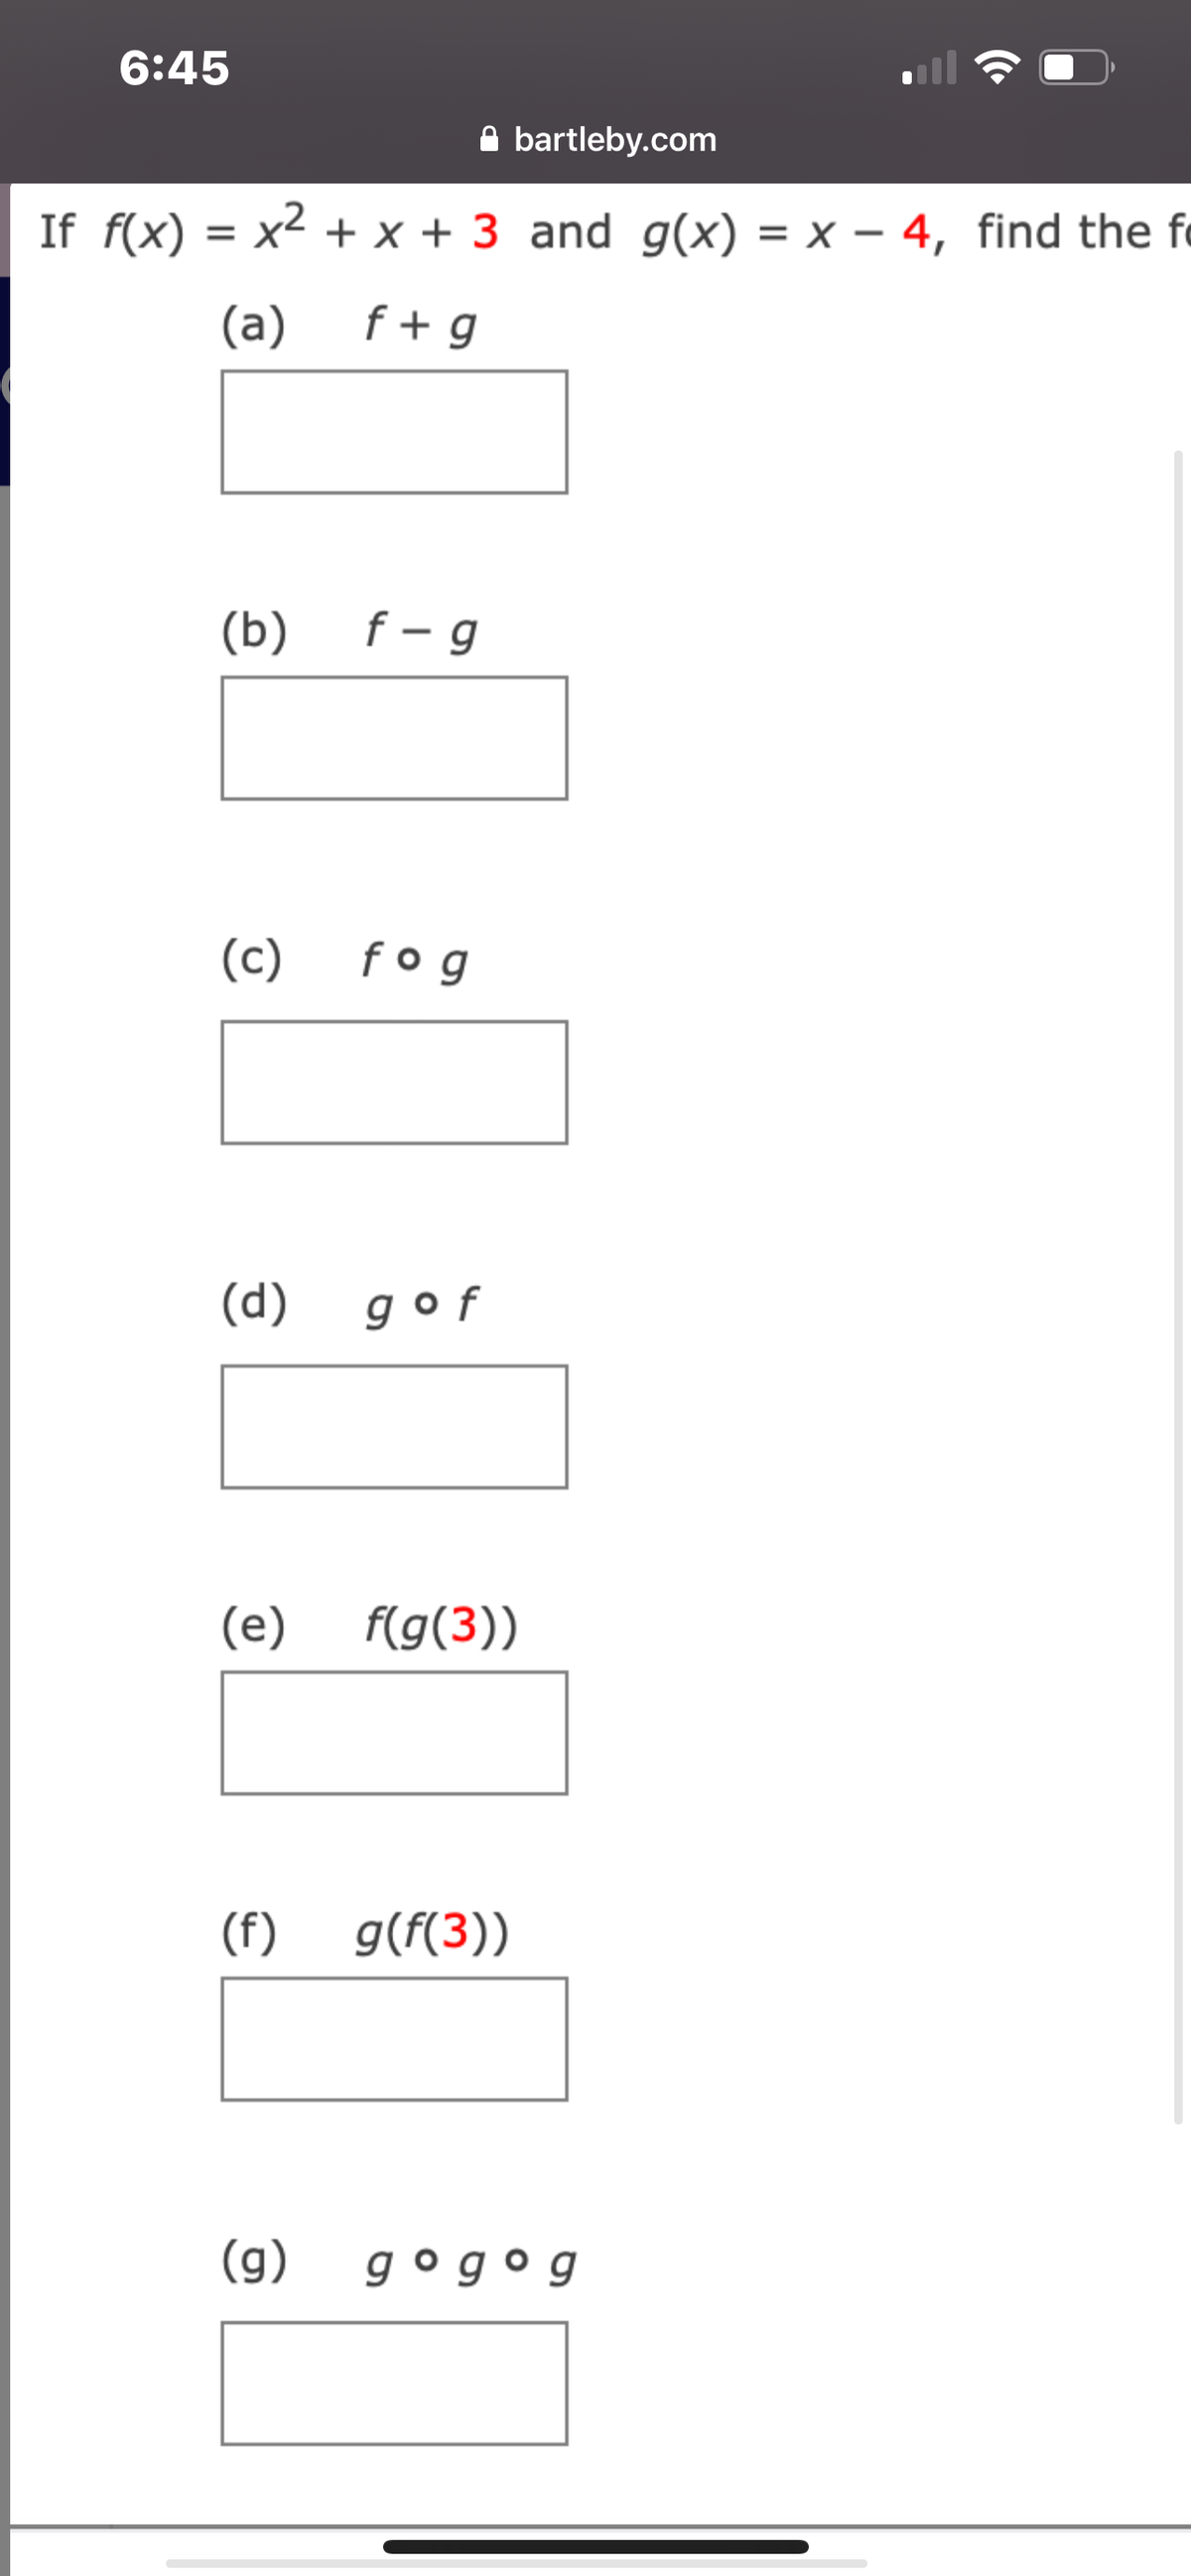 6:45
A bartleby.com
If f(x) = x2 + x + 3 and g(x) = x – 4, find the fo
= X'
(a)
f + g
(b) f- g
(c)
fo g
(d) gof
(e)
f(g(3))
(f)
g(f(3))
(g) gogog
